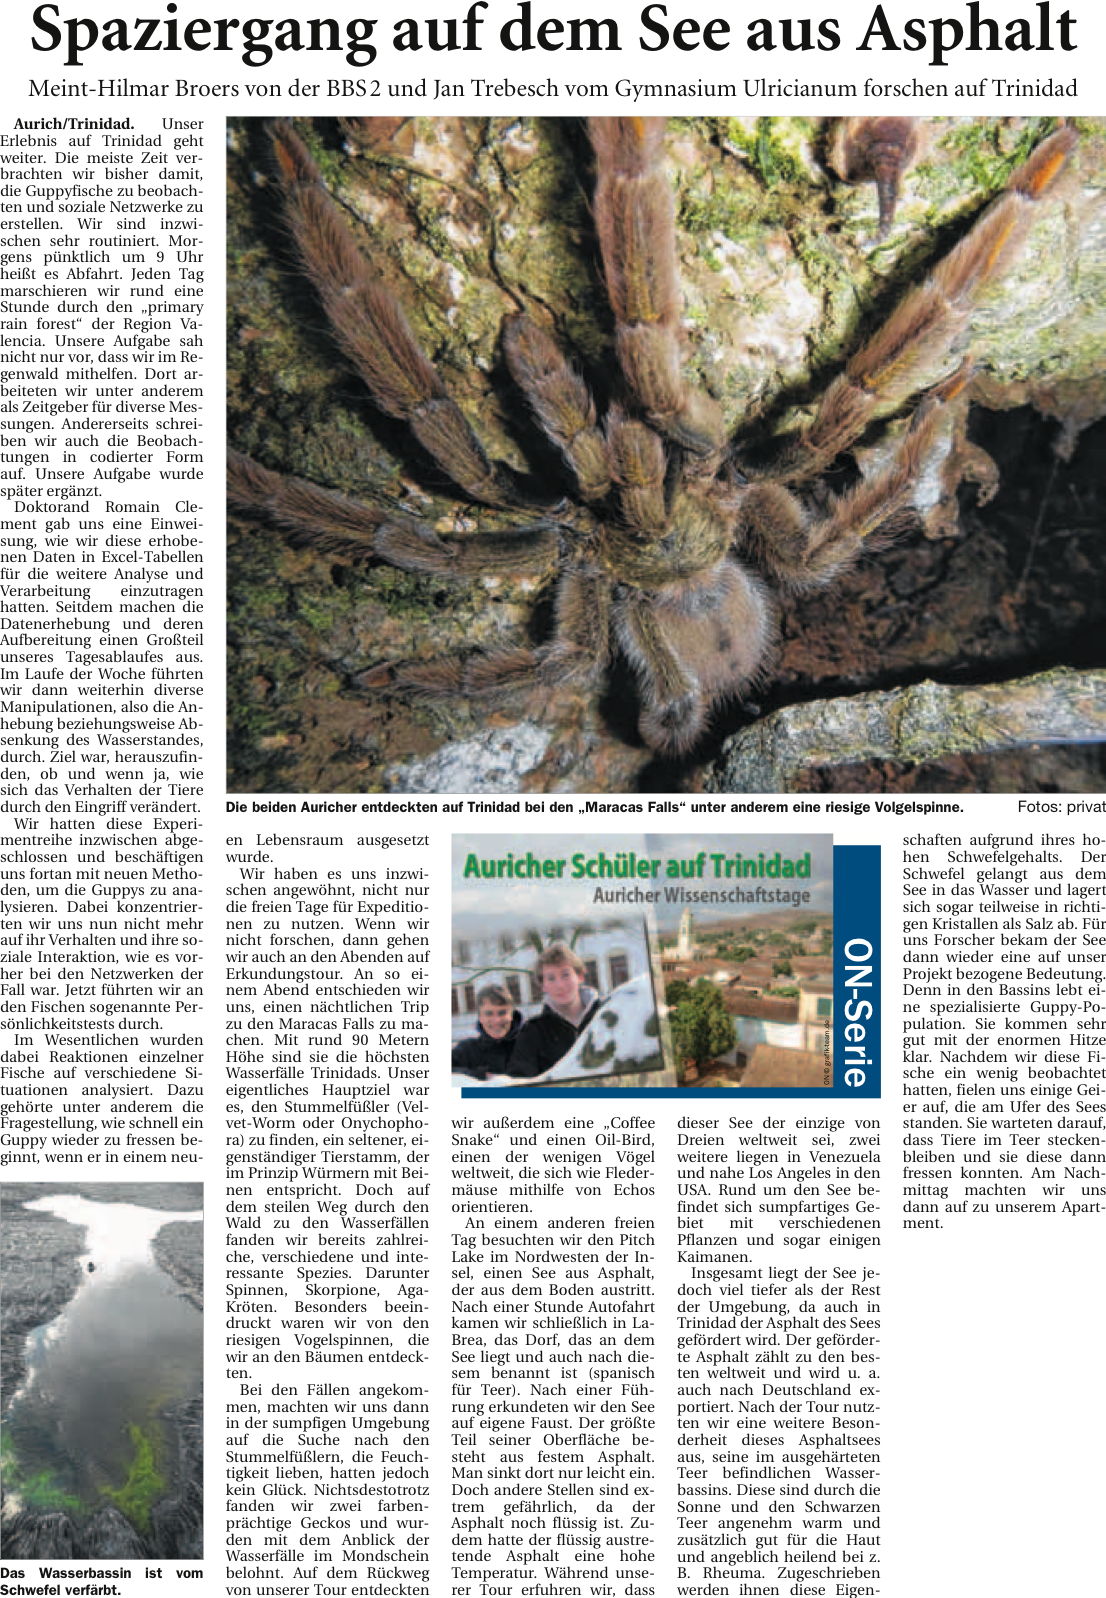 Artikel der Ostfriesischen Nachrichten vom 10.04.2013 zur Expedition in die Karibik (E-Paper-Version), 522 k